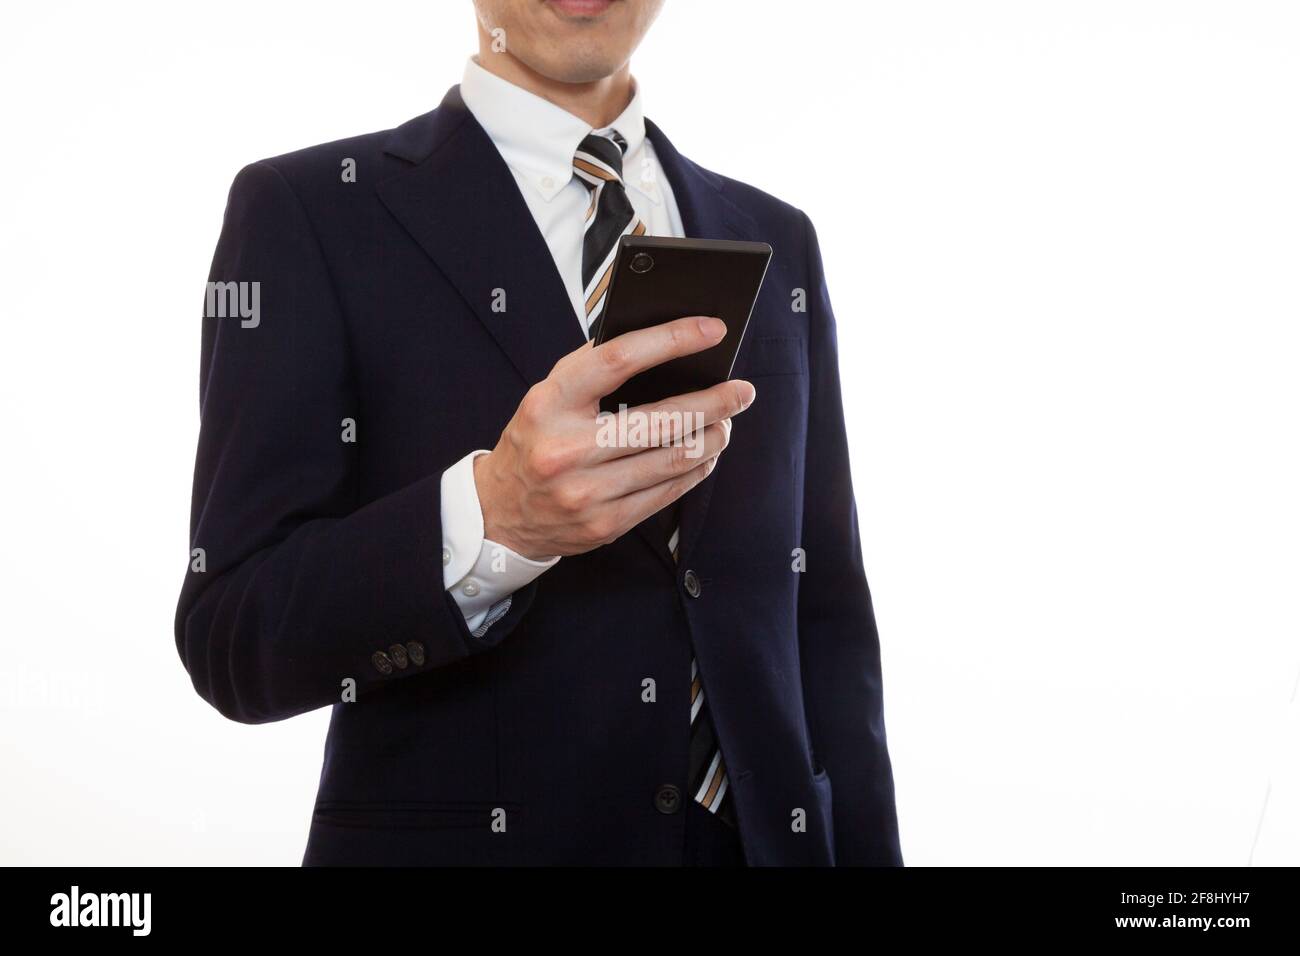 Un homme en costume qui utilise un smartphone dans son côté droit Banque D'Images